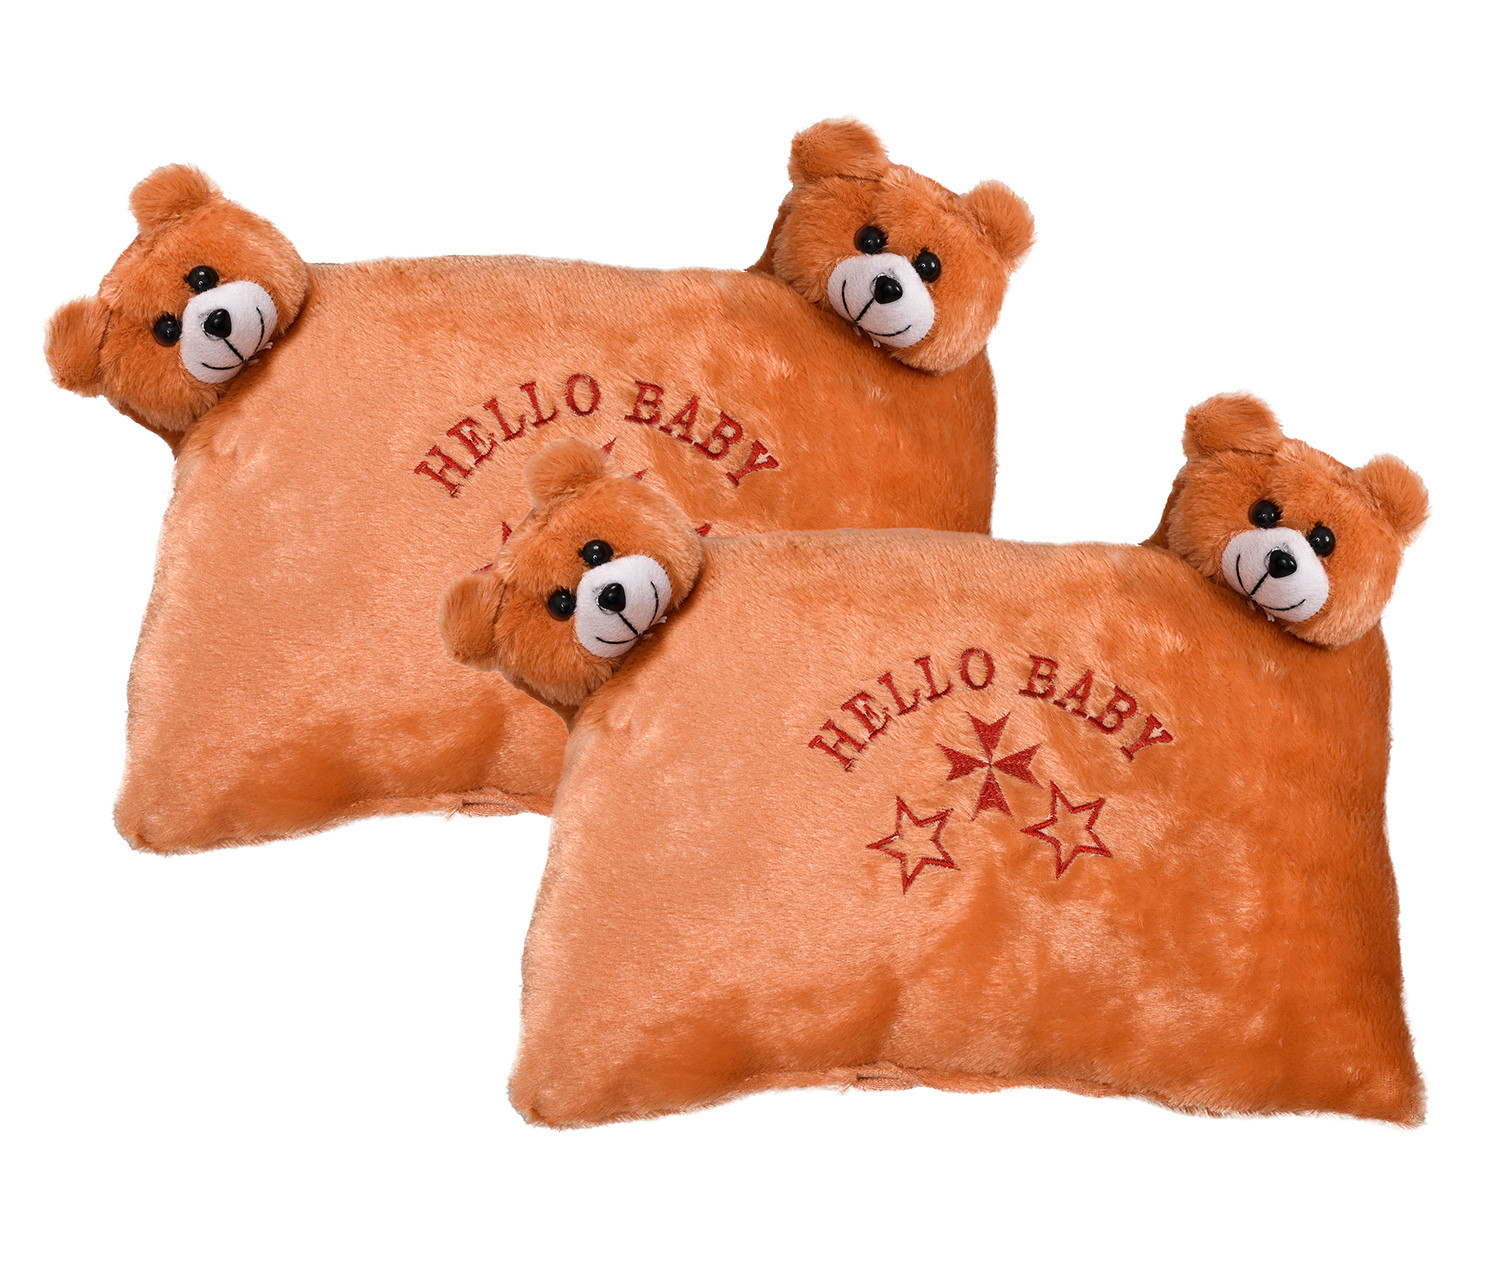 Kuber Industries Hello Teddy Design Baby Pillow|Velvet Super soft Kids Pillow For Sleeping & Travel,12 x 18 Inch,(Orange)